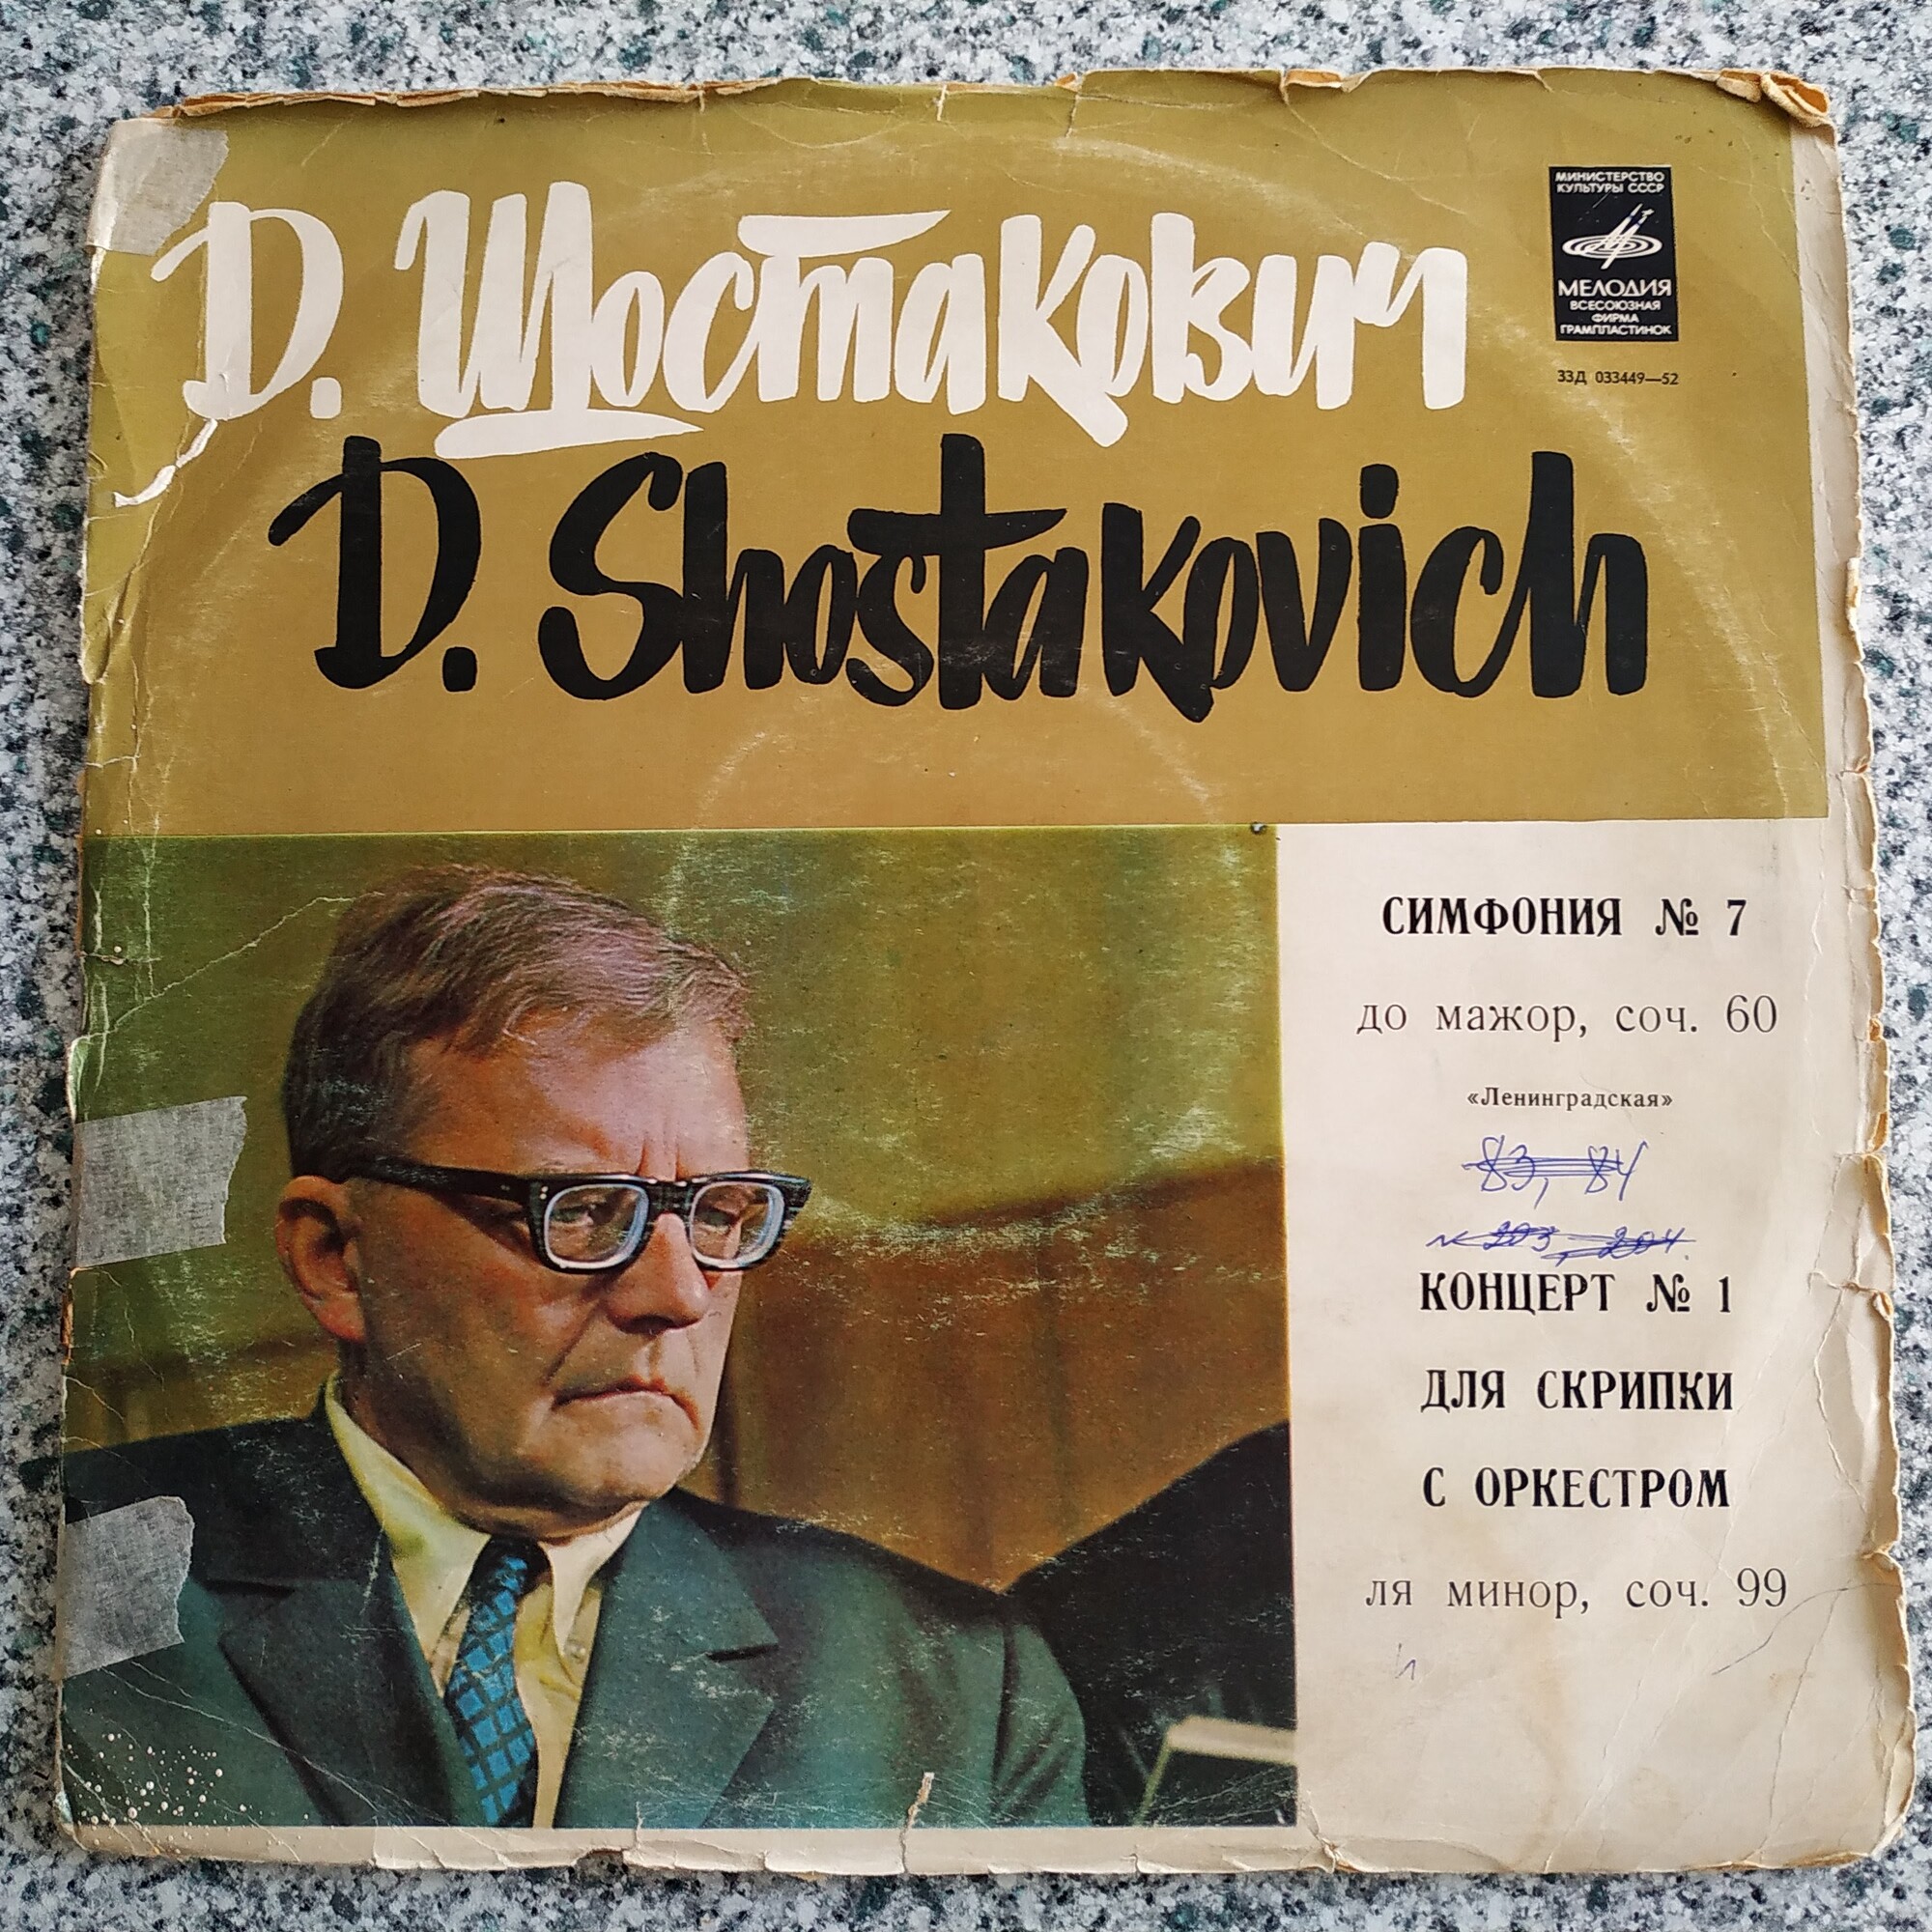 Д.Шостакович